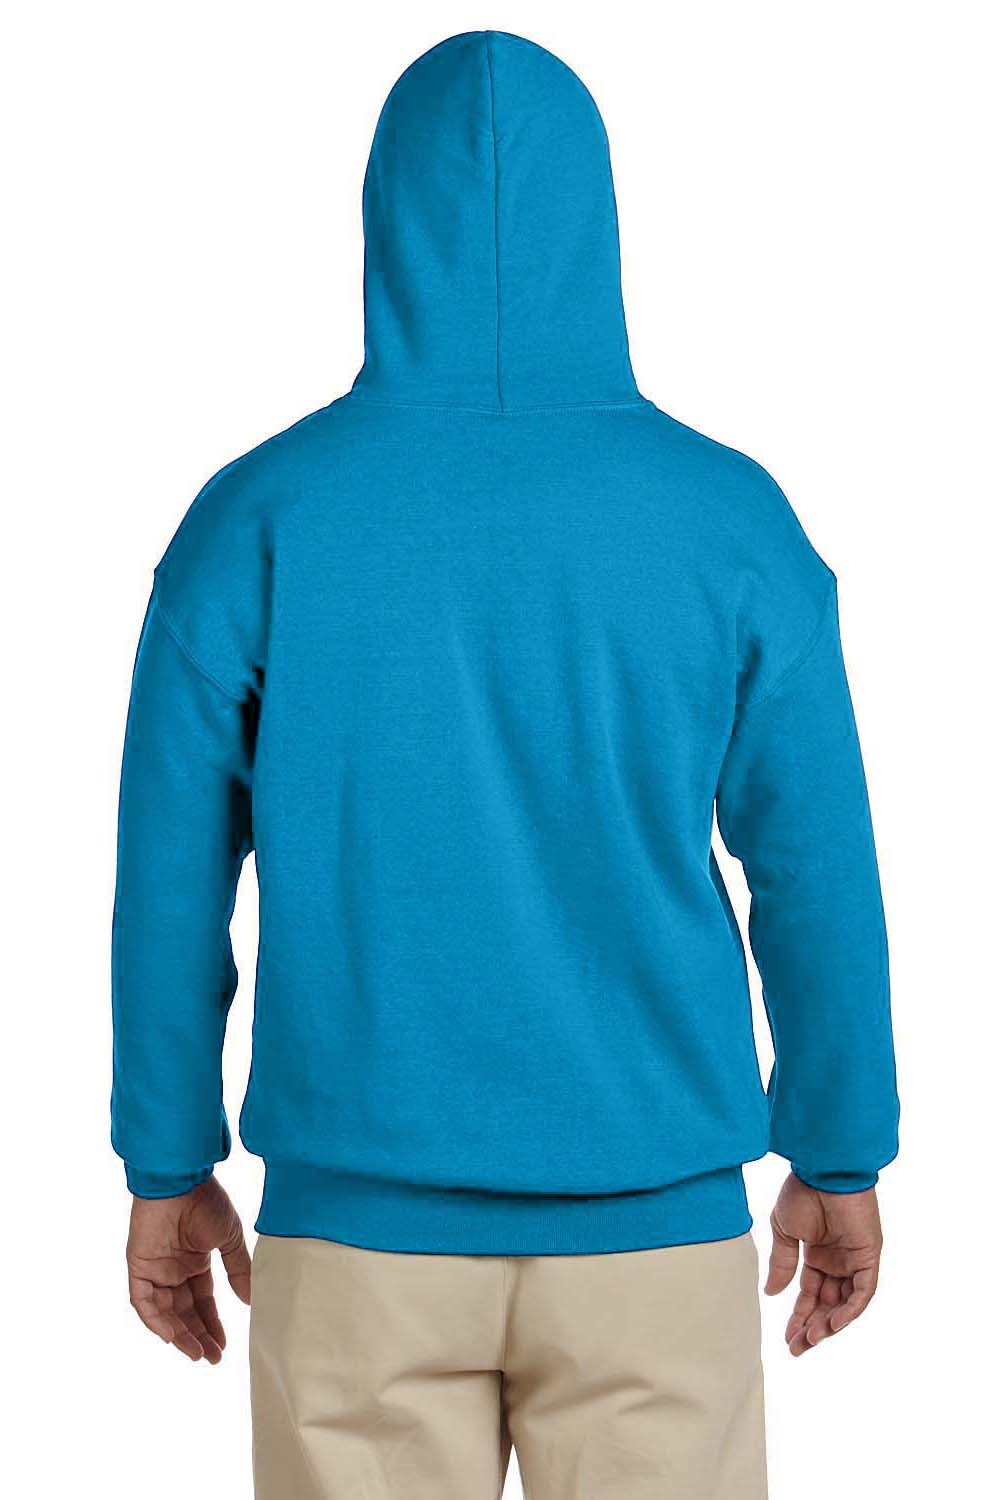 Gildan G185 Mens Hooded Sweatshirt Hoodie Sapphire Blue Back